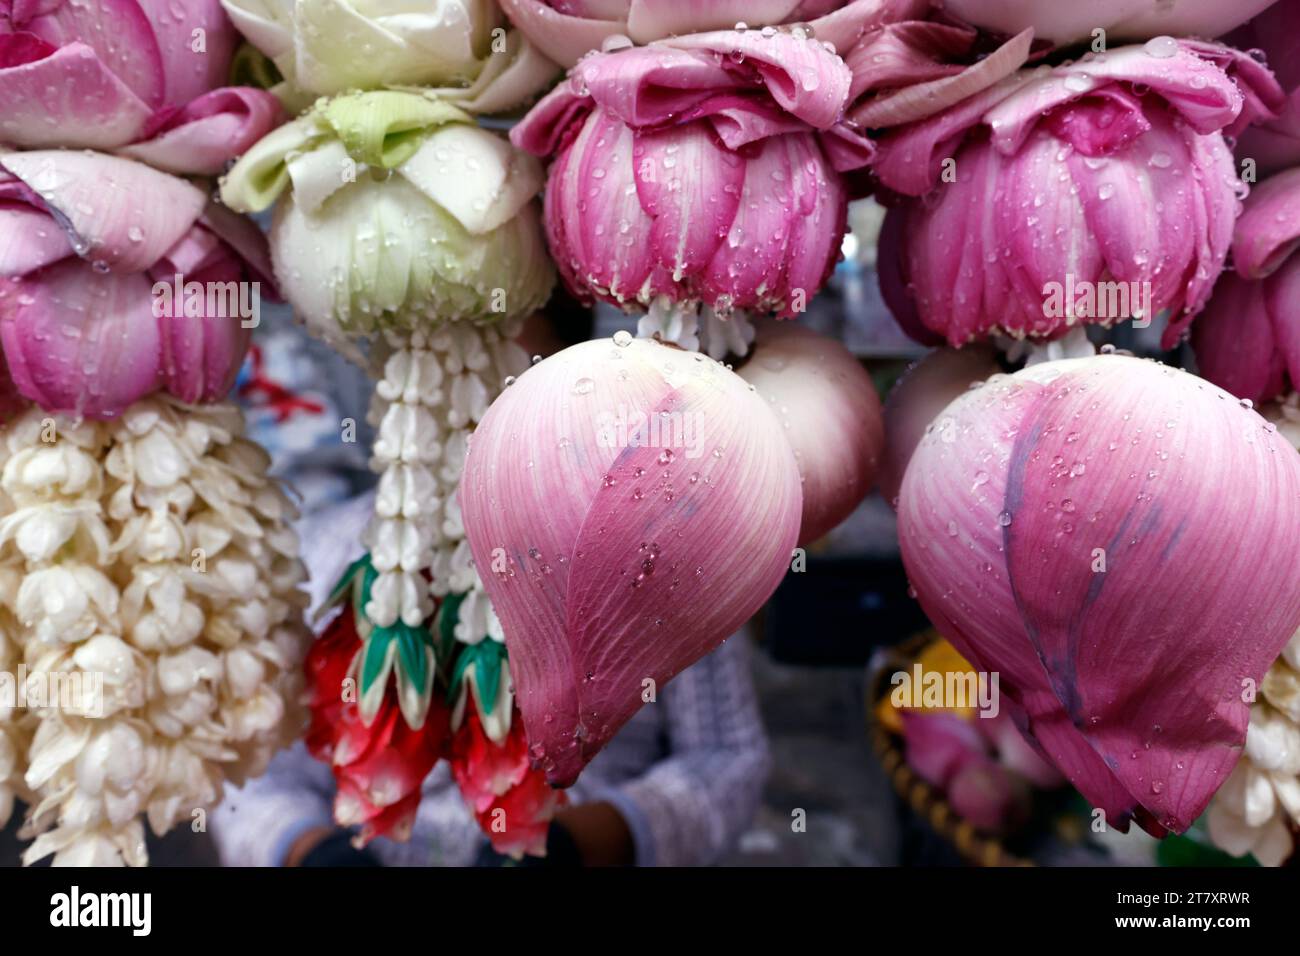 Ghirlande di fiori come offerte del tempio per la cerimonia indù, negozio di fiori indiani al Tempio di Sri Maha Mariamman, Bangkok, Thailandia, Sud-Est Asiatico, Asia Foto Stock